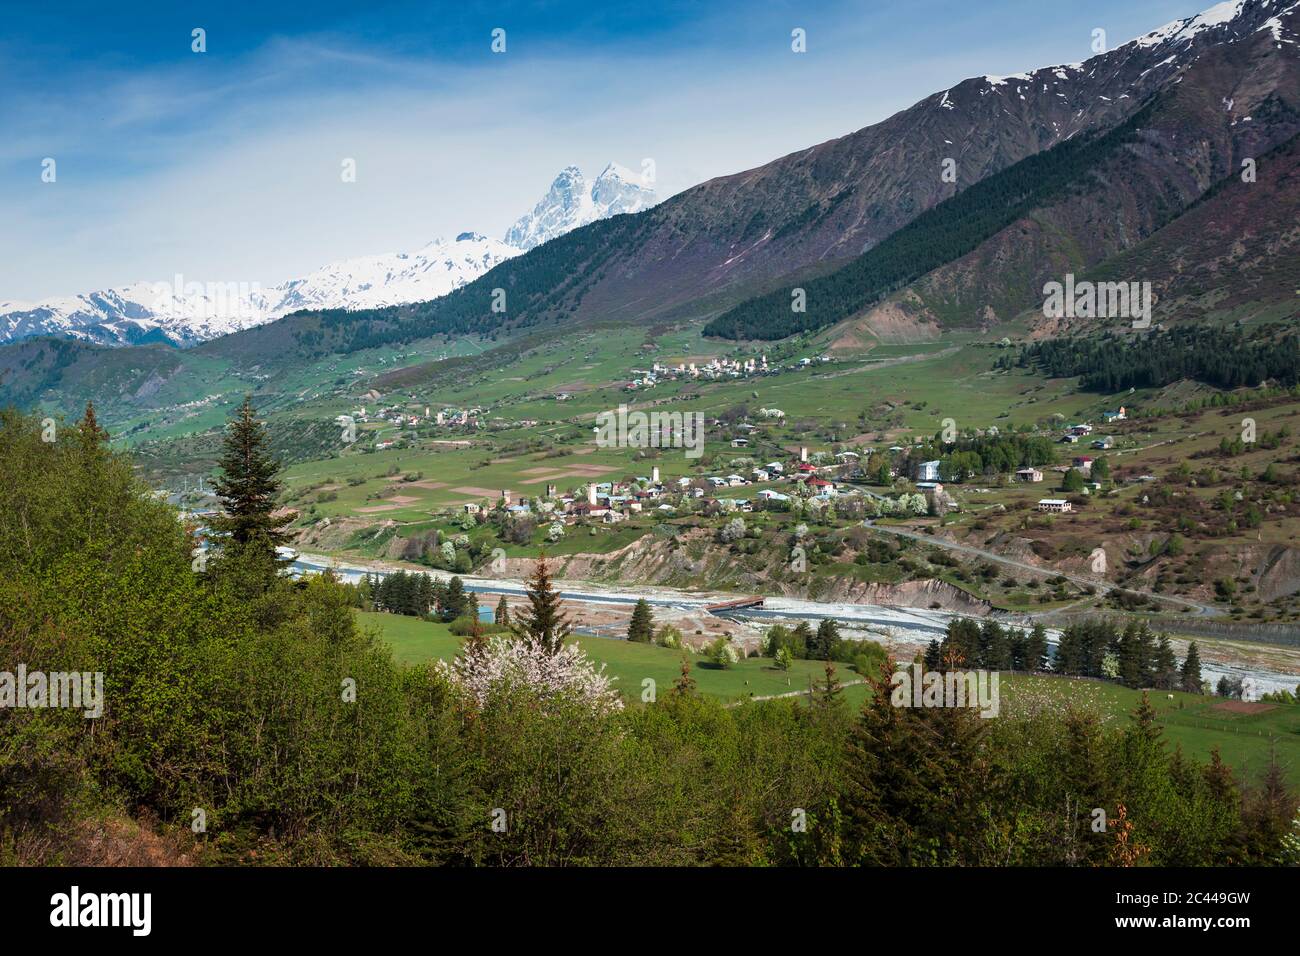 Georgia, Svaneti, Mestia, Medieval village in Caucasus Mountains Stock Photo